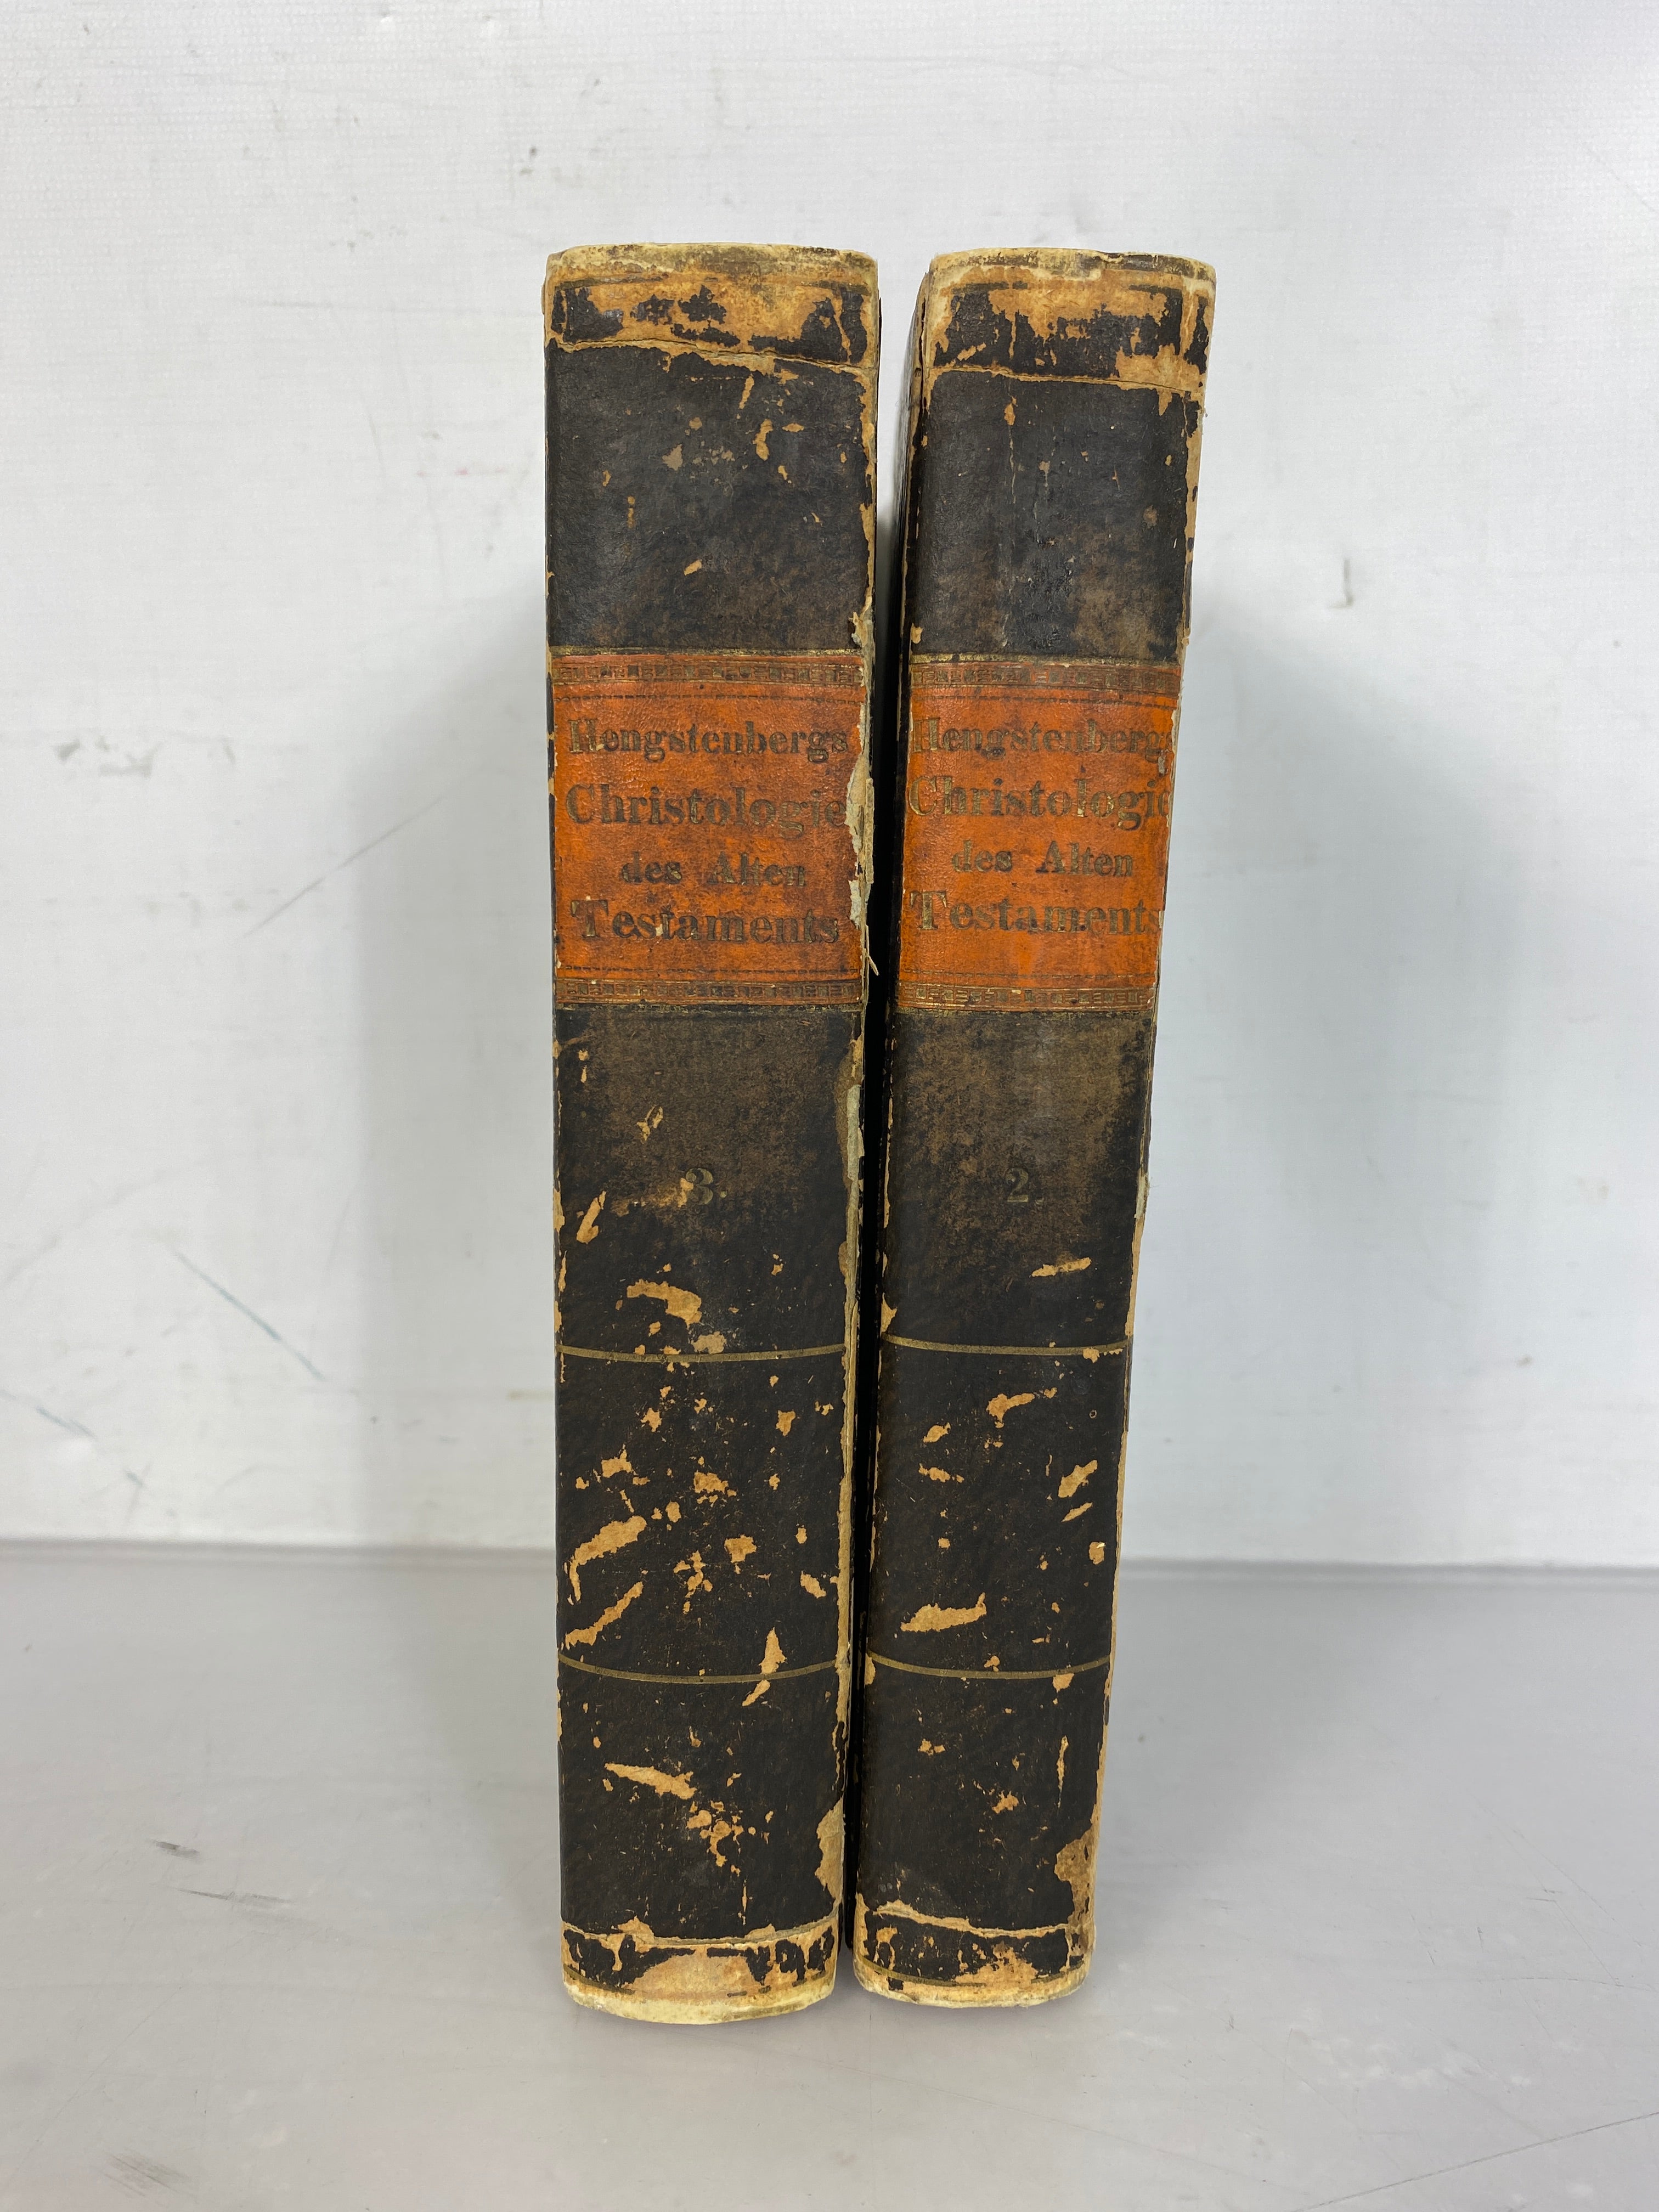 Set of 2 Christologie des Alten Testament by Hengstenberg 1832-1835 HC